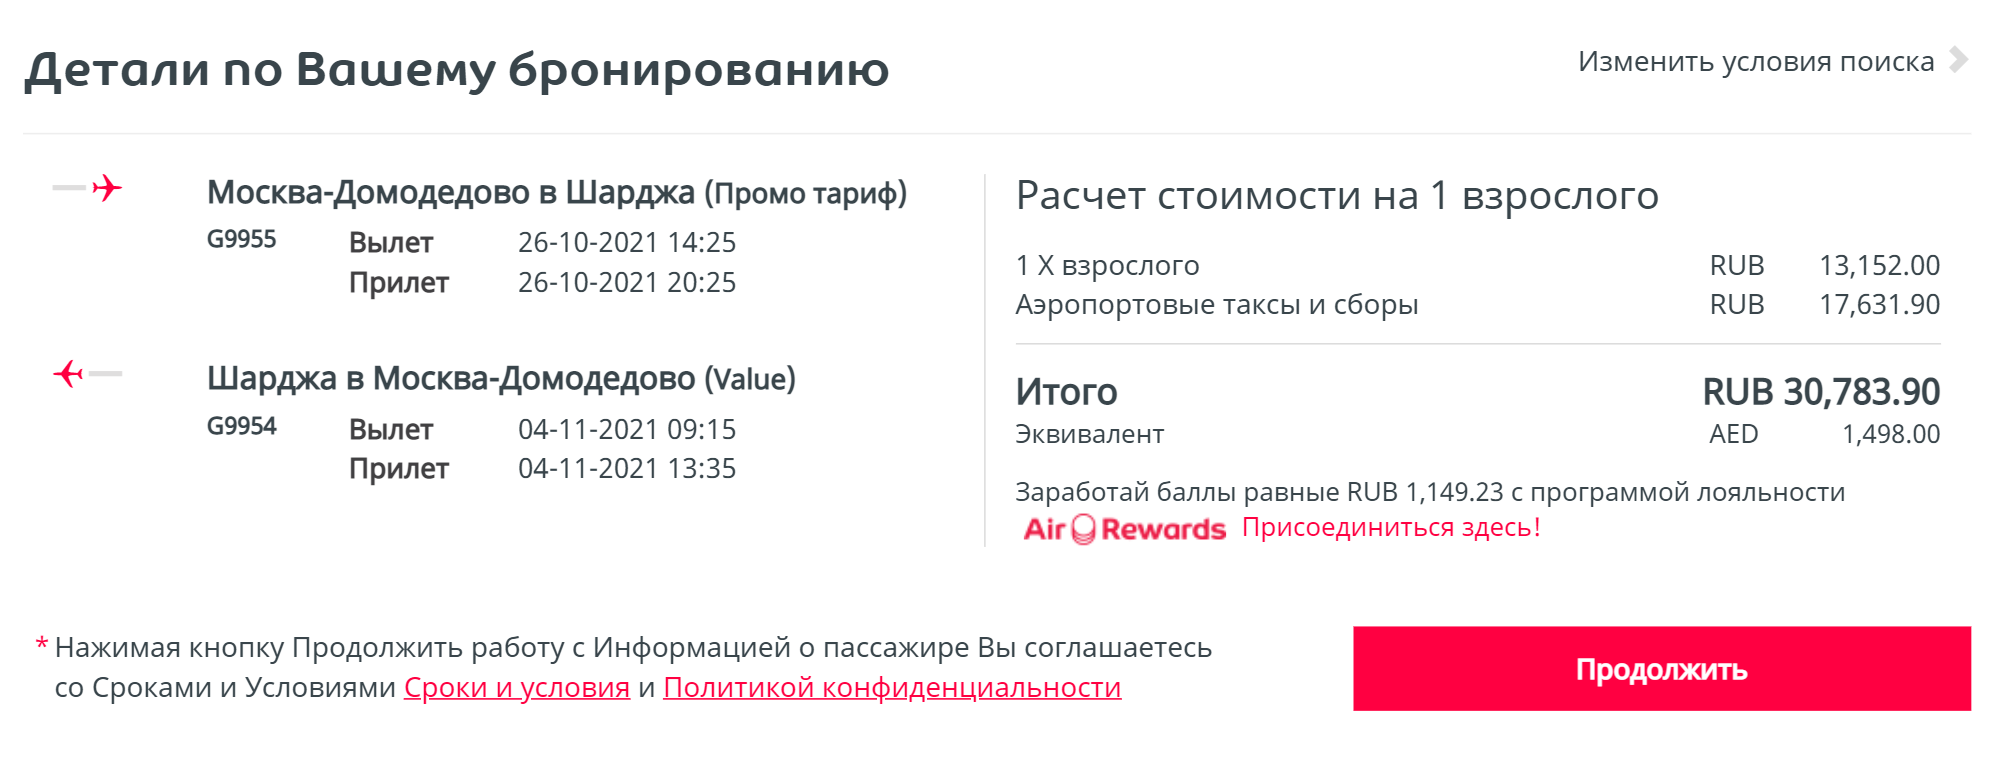 Стоимость перелета по маршруту Москва — Шарджа — Москва от компании Air Arabia. Воспользуюсь ли я выигранным билетом — большой вопрос